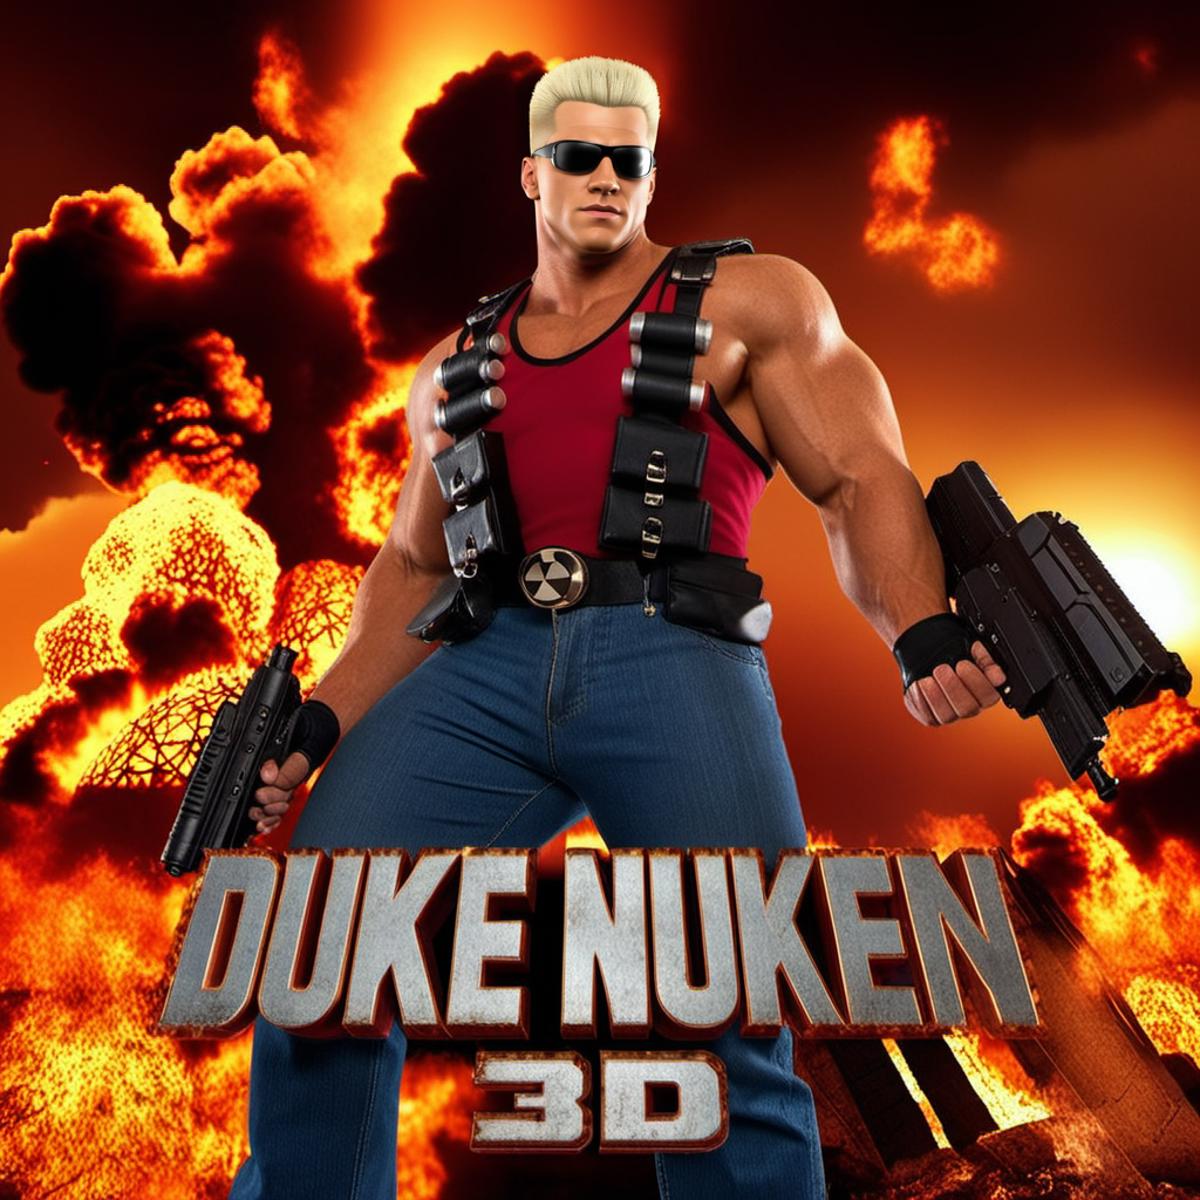 Duke Nukem - SDXL image by PhotobAIt